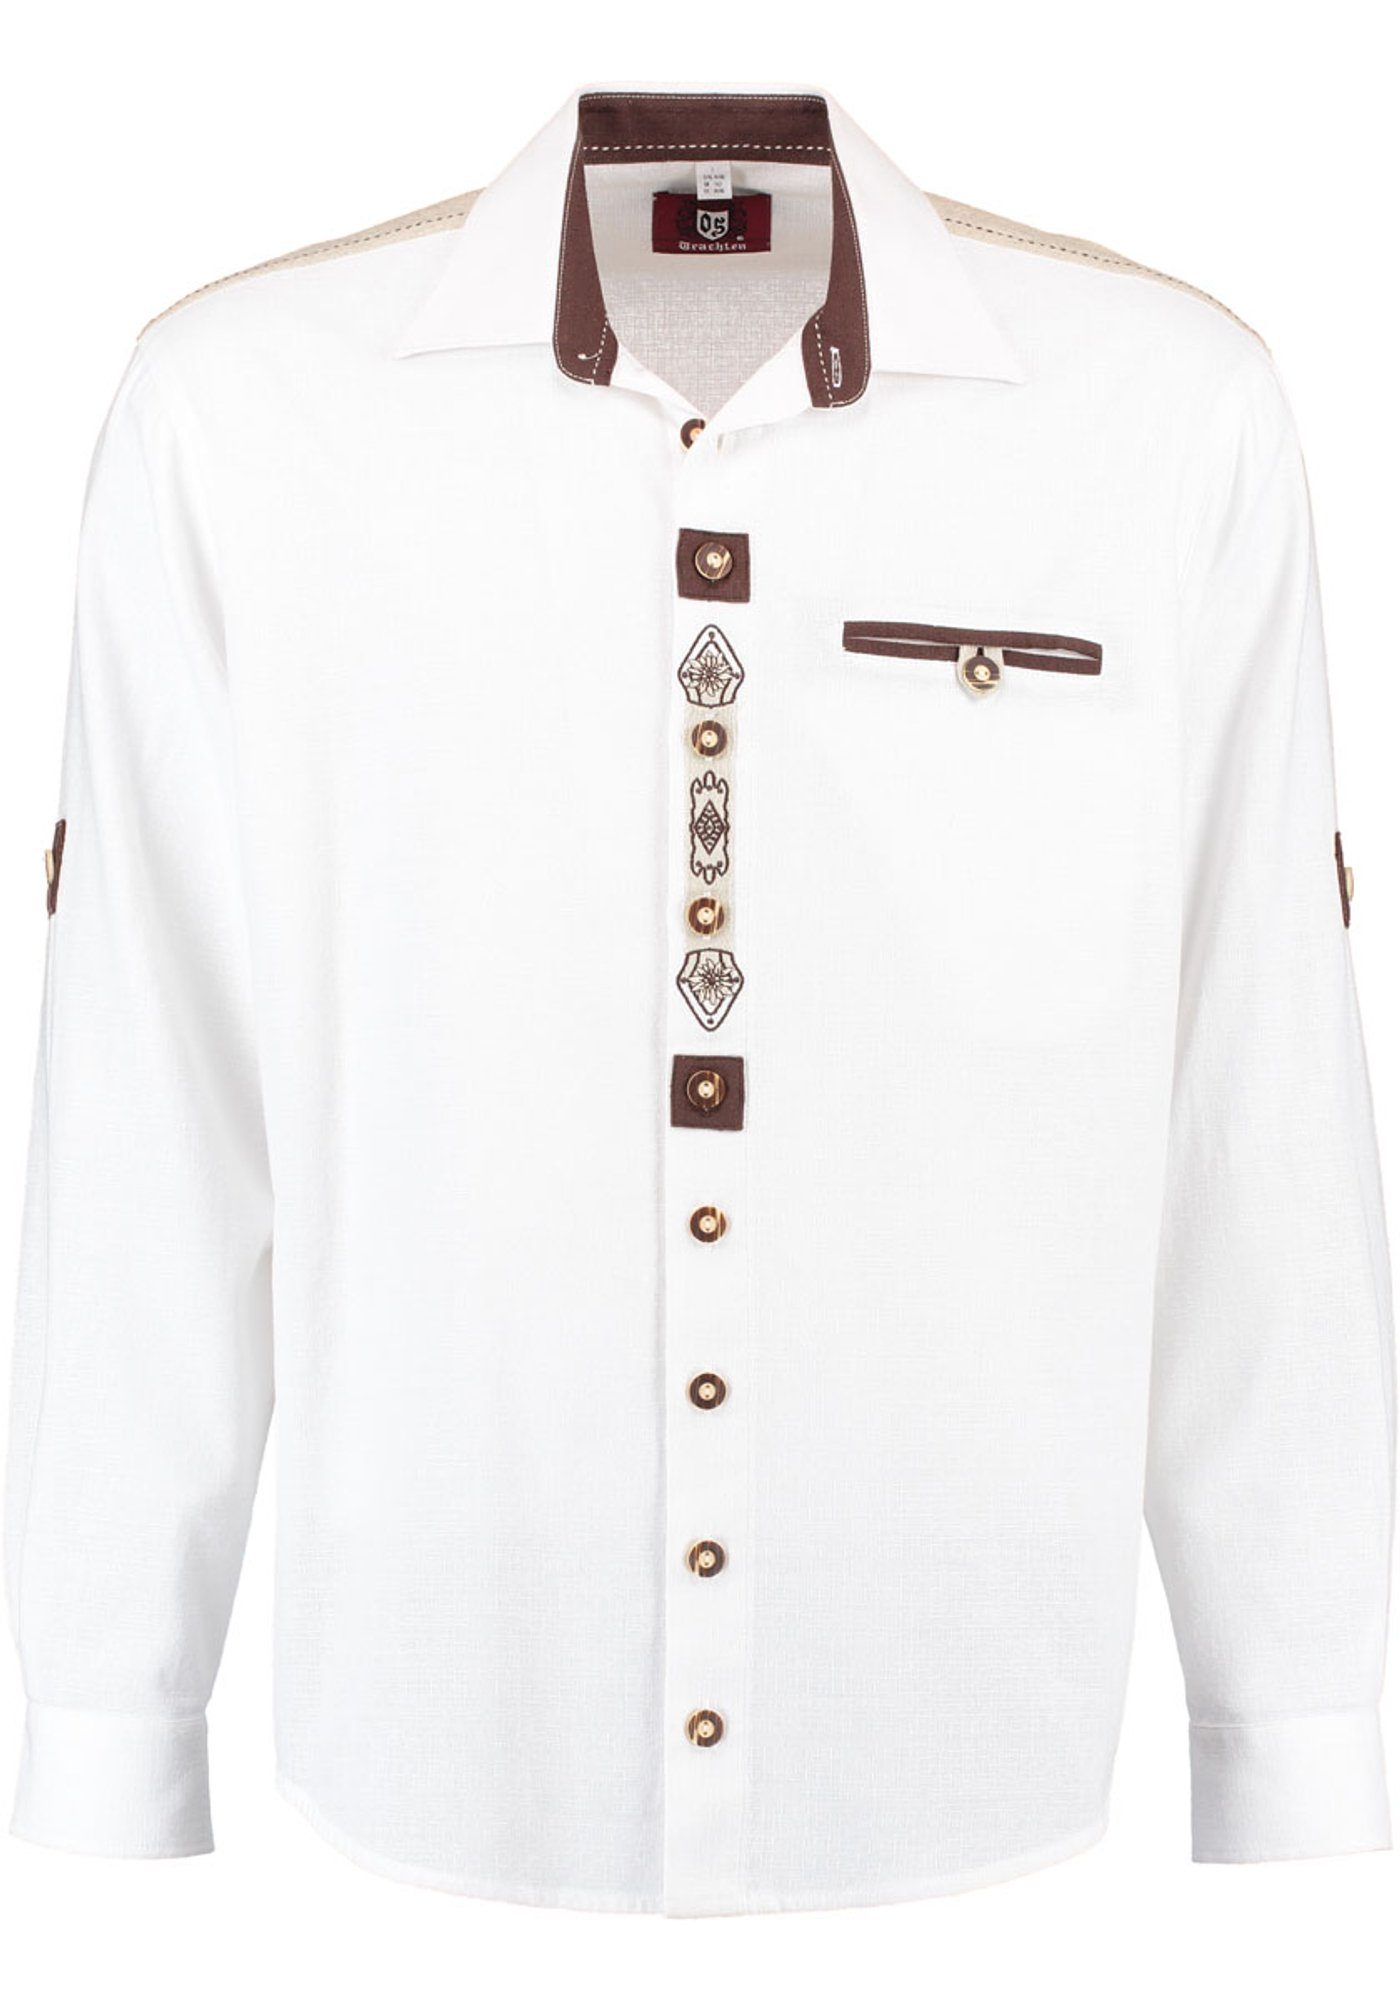 OS-Trachten Trachtenhemd Edelweiß-Stickerei auf mit Knopfleiste der Fihud Langarmhemd